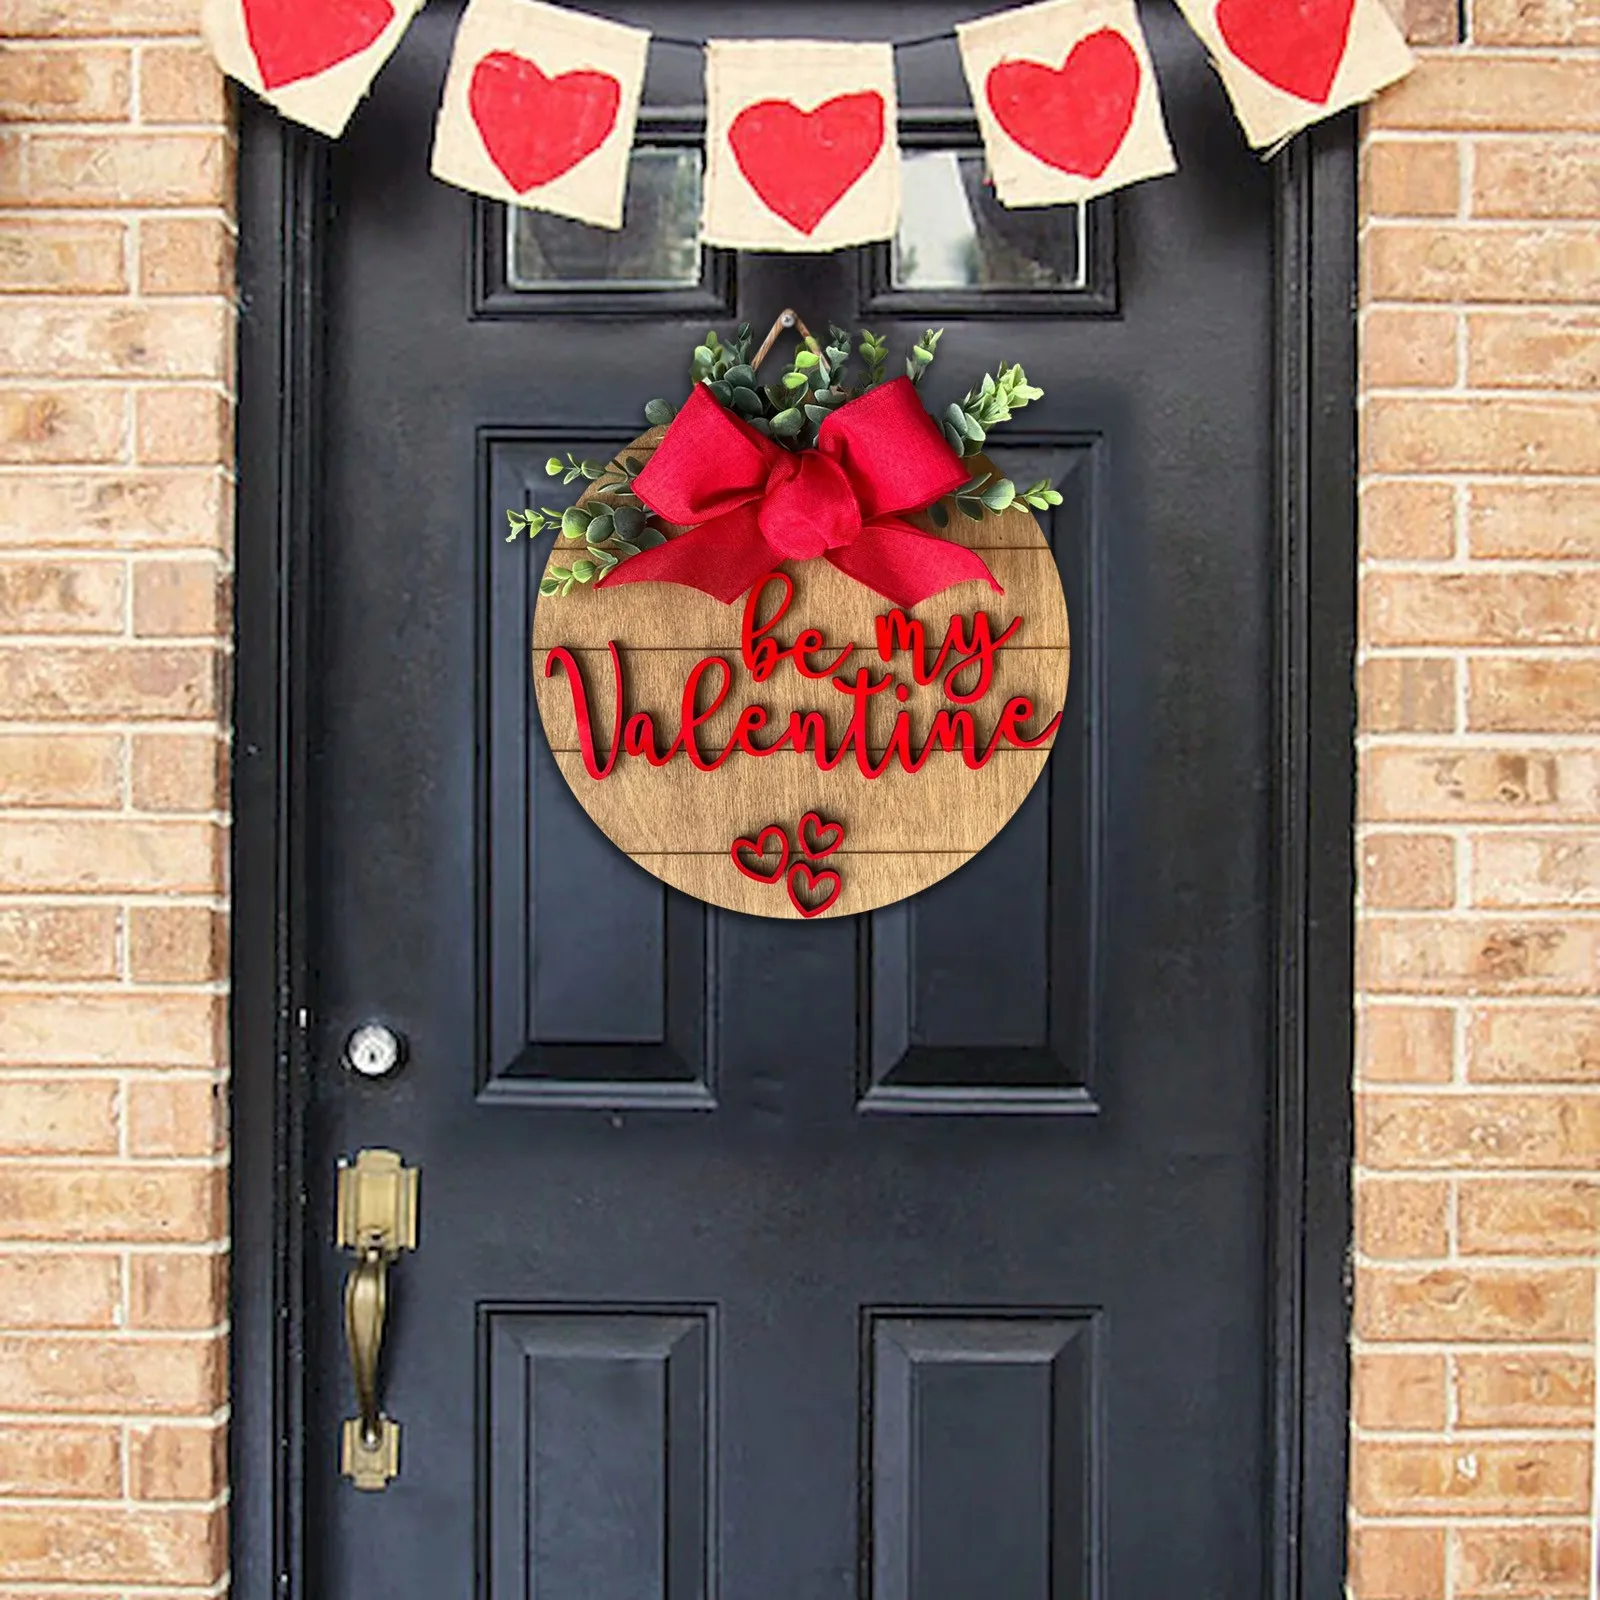 

Дверная вешалка ко Дню Святого Валентина, гном, любовь, список праздников, домашний декор, Домашний номер